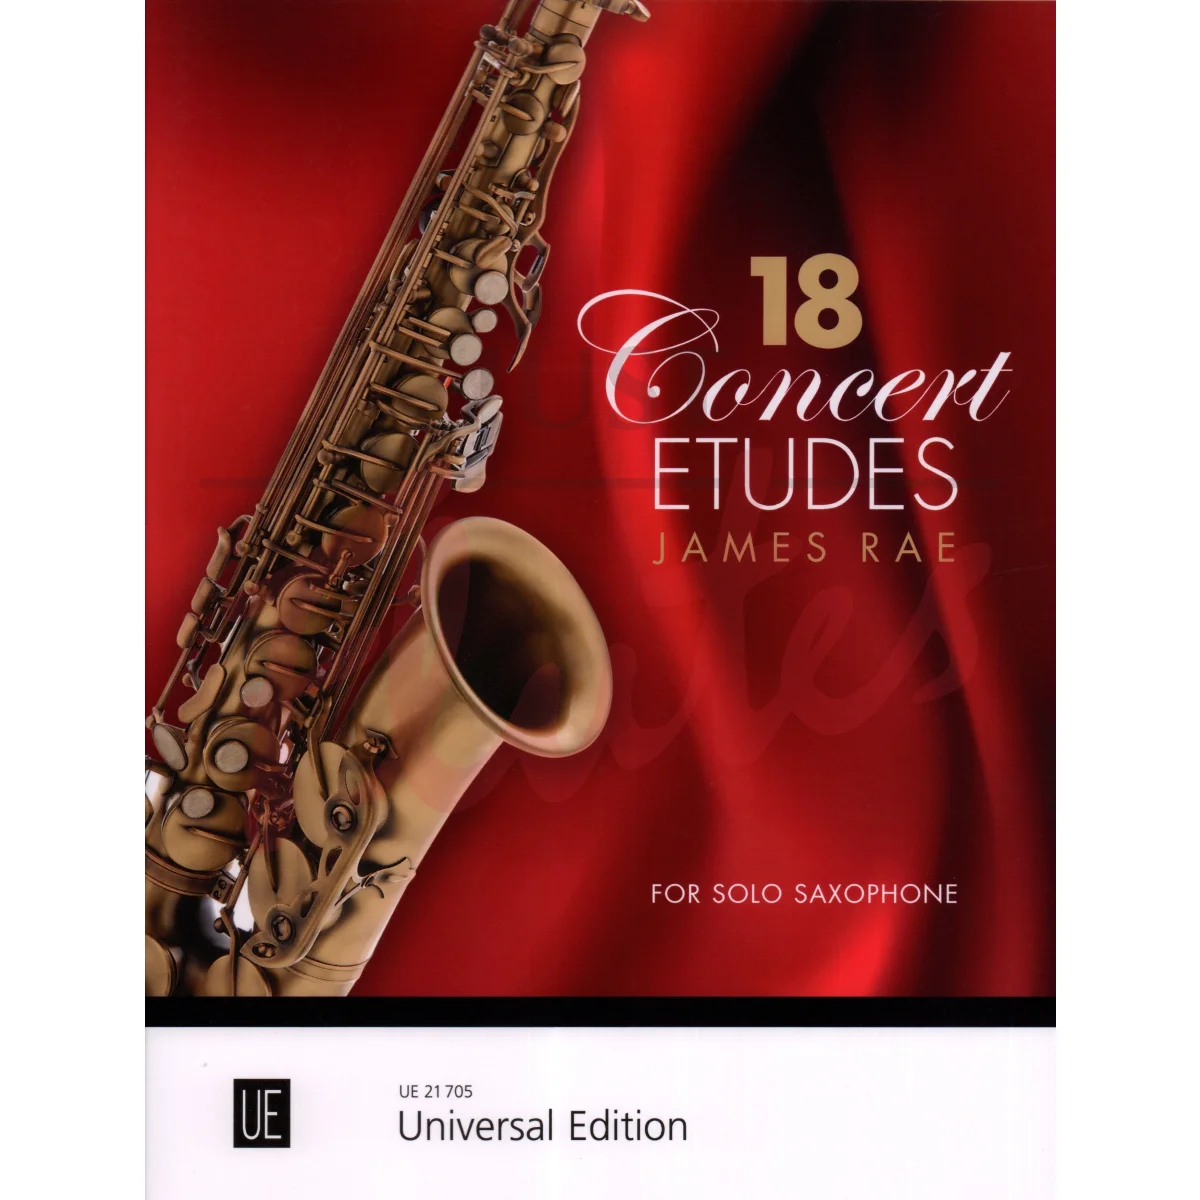 18 Concert Etudes for Solo Saxophone